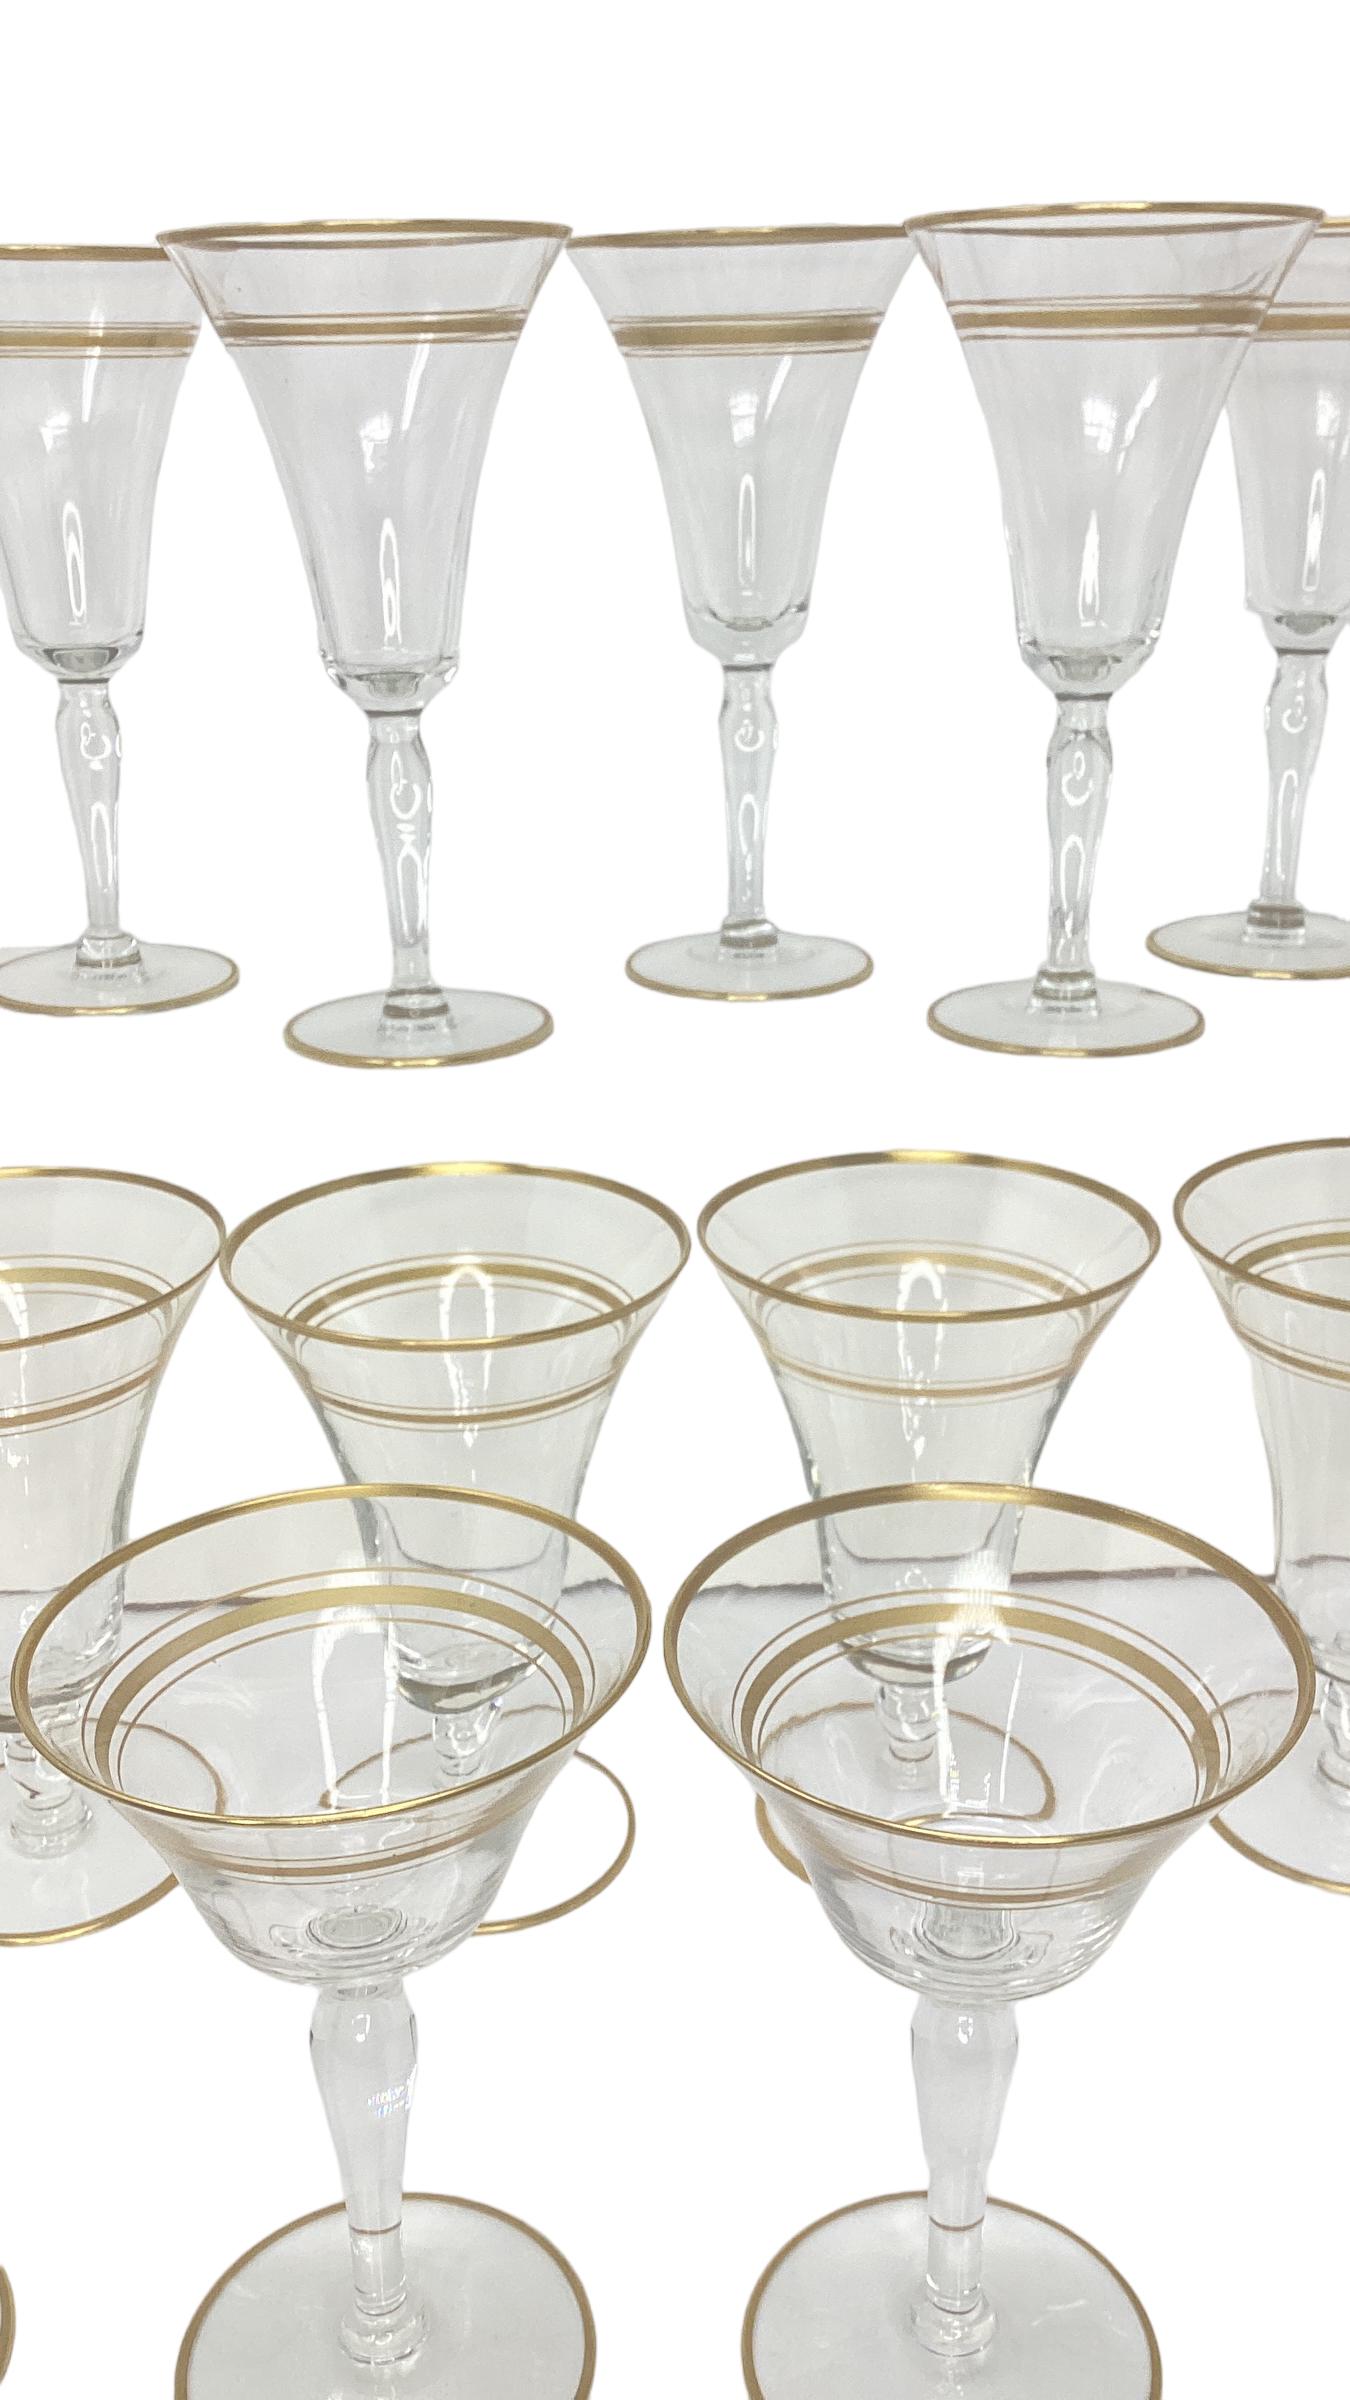 Ensemble de 18 verres à pied Vintage à bord doré. L'ensemble comprend 6 coupes à champagne, 6 verres à vin rouge, 6 gobelets à eau qui peuvent également être utilisés pour le vin blanc. La coupe mesure 3,75 